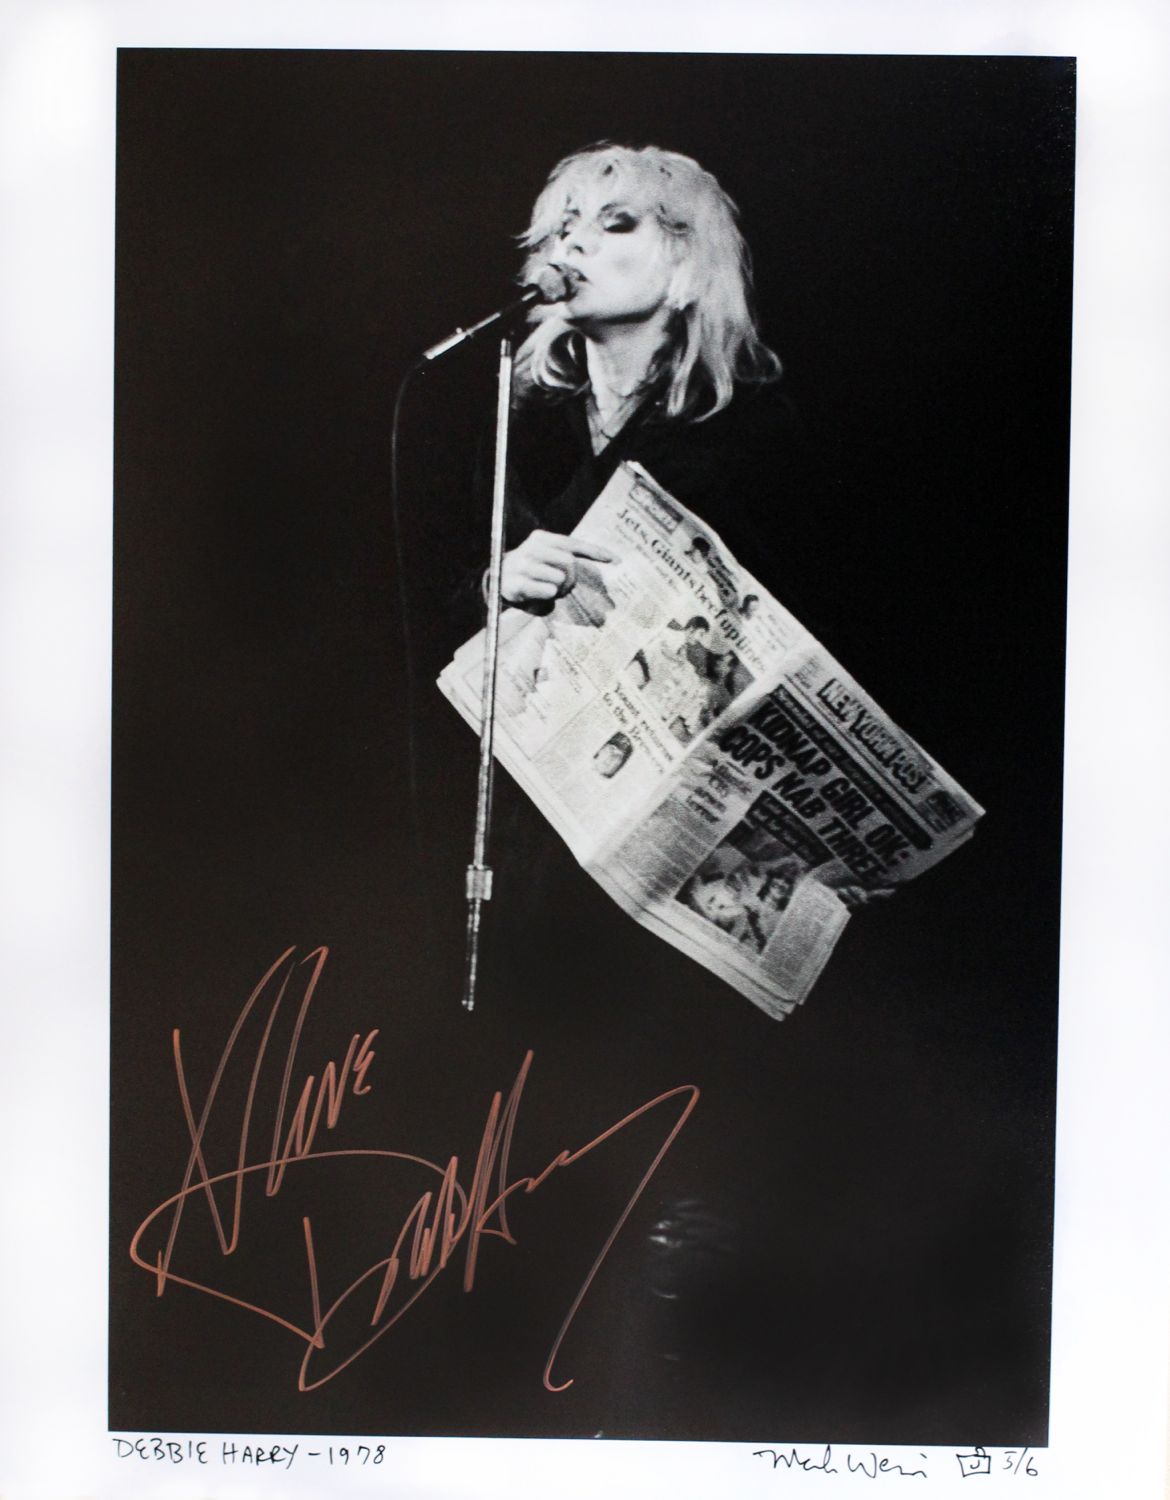 Debbie Harry of Blondie 1978 (11 x 14) 5/6 